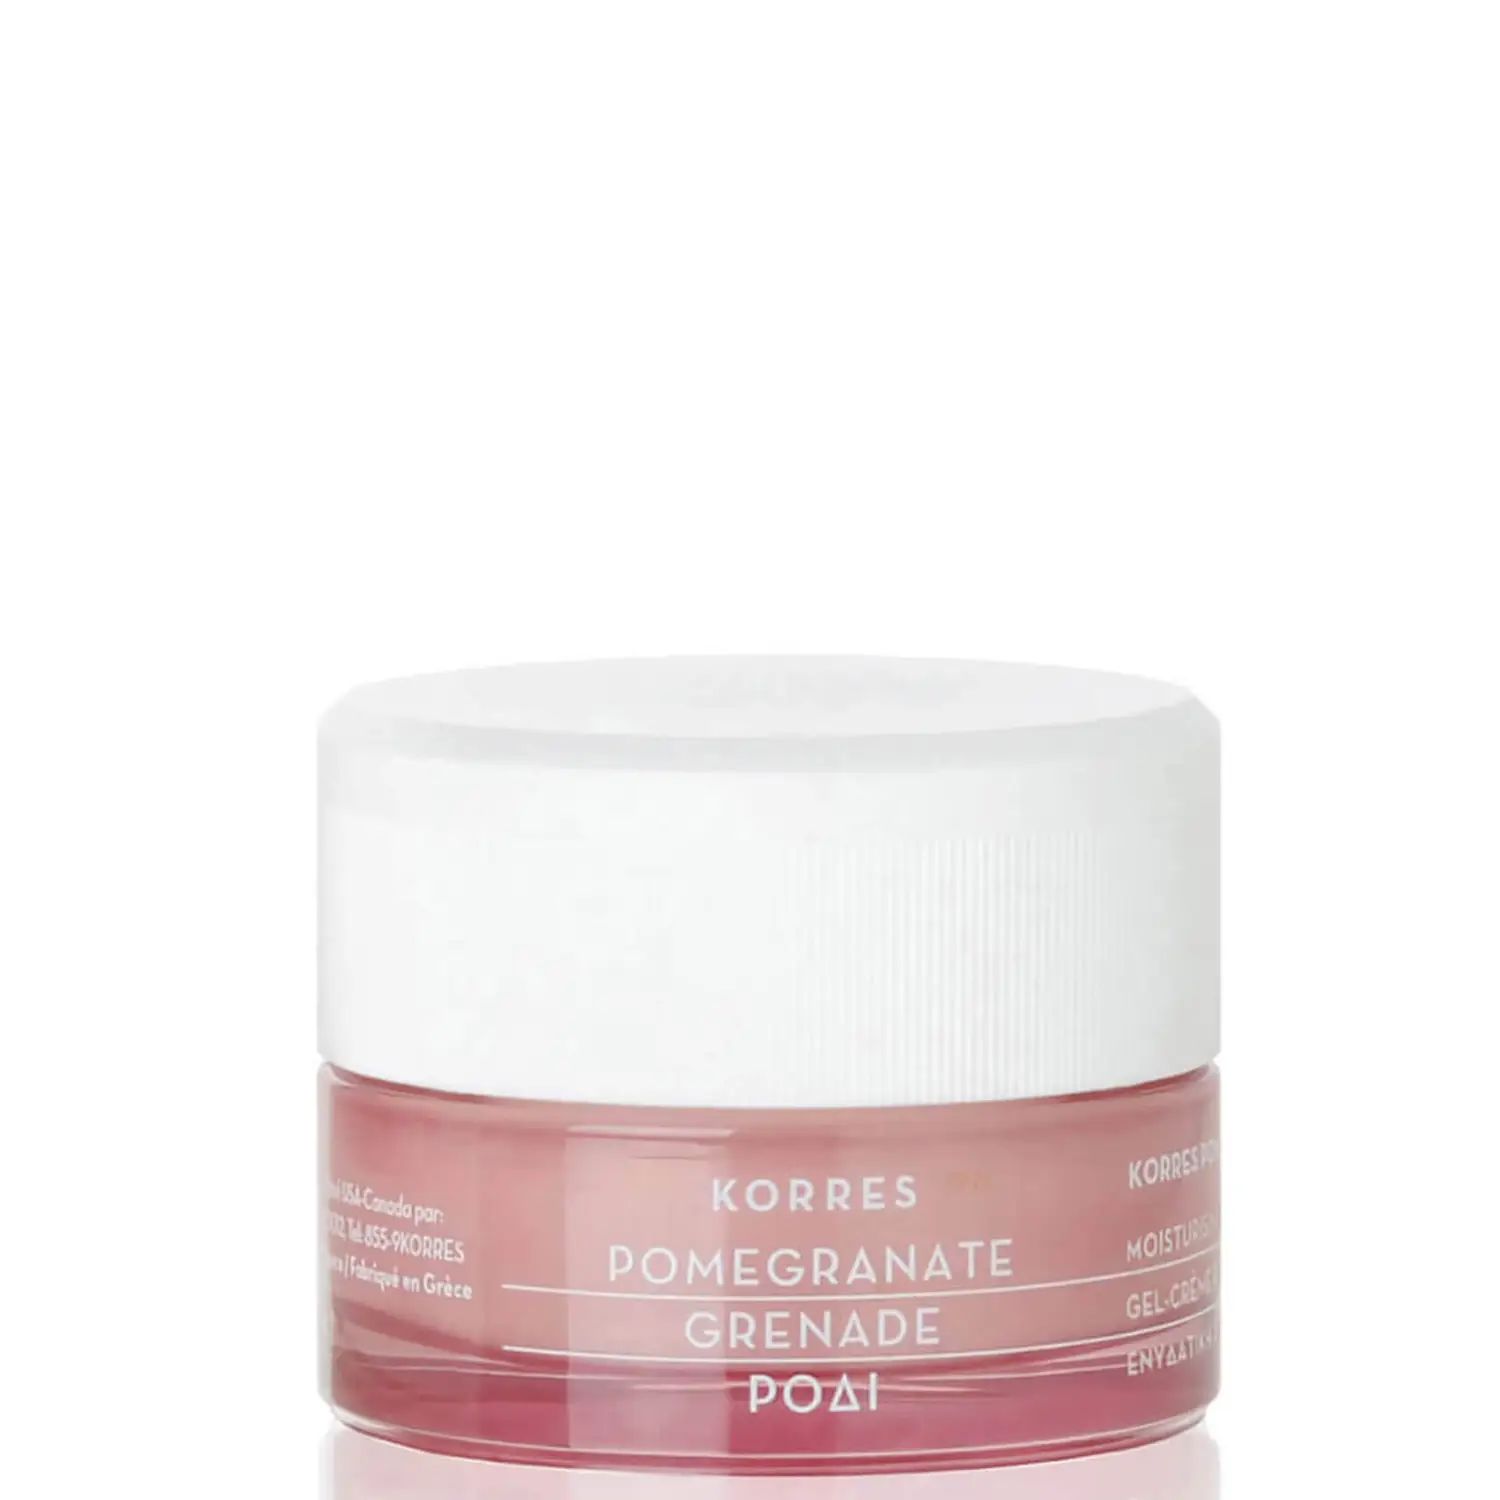 KORRES Pomegranate Pore Blurring Gel Moisturizer (1.35 fl. oz.) | Dermstore (US)